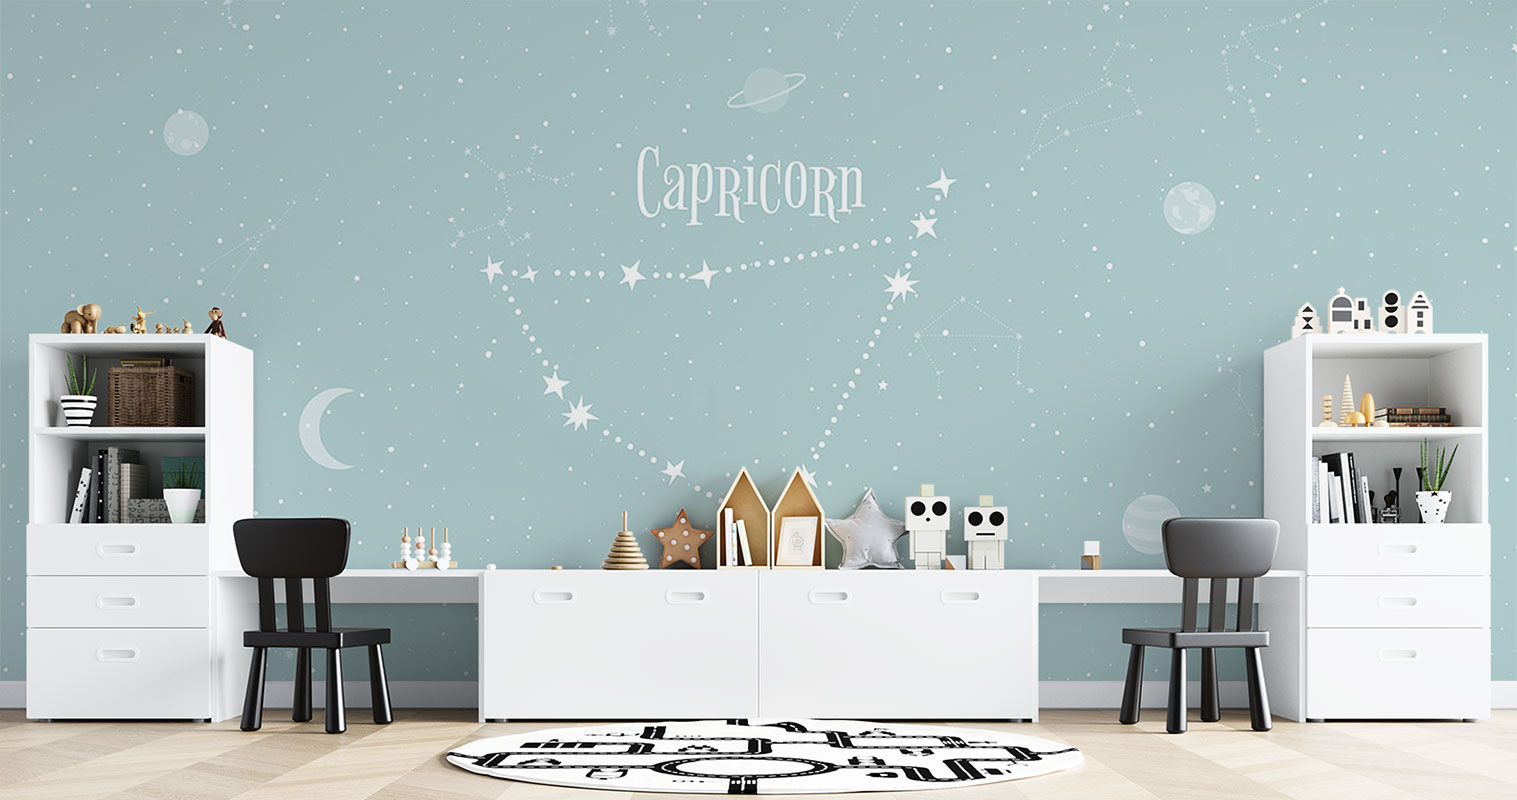 Horoscope Capricorn – Light Blue